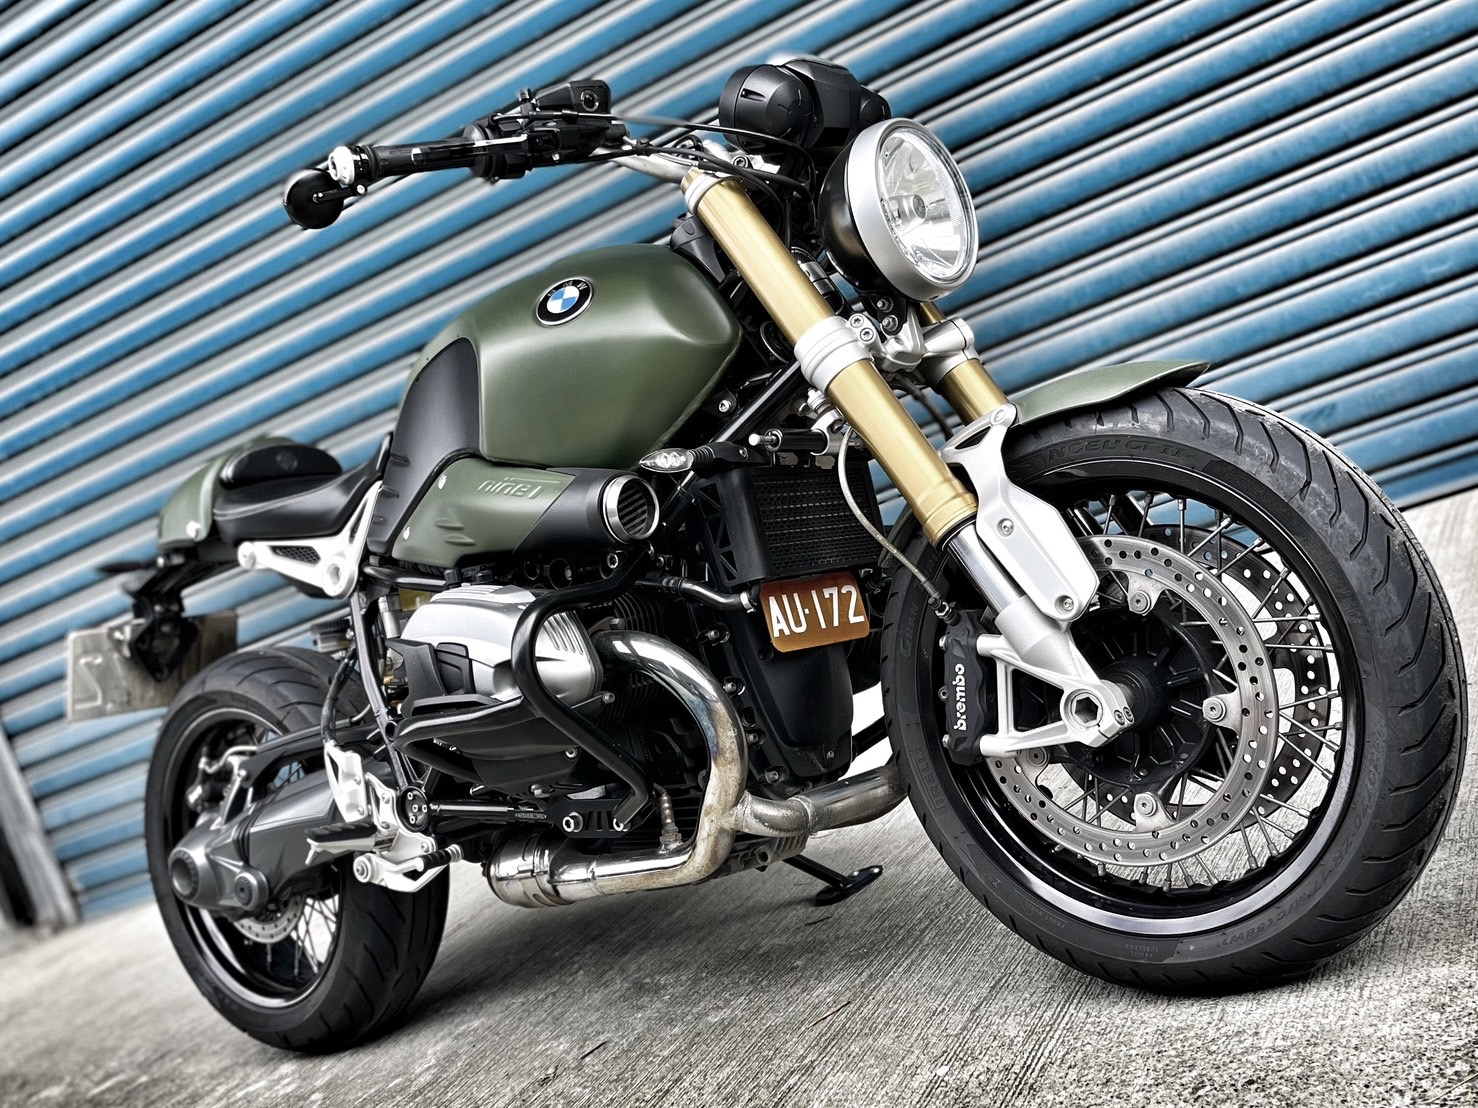 【小資族二手重機買賣】BMW R nineT - 「Webike-摩托車市」 視覺改裝 無倒無摔 小資族二手重機買賣